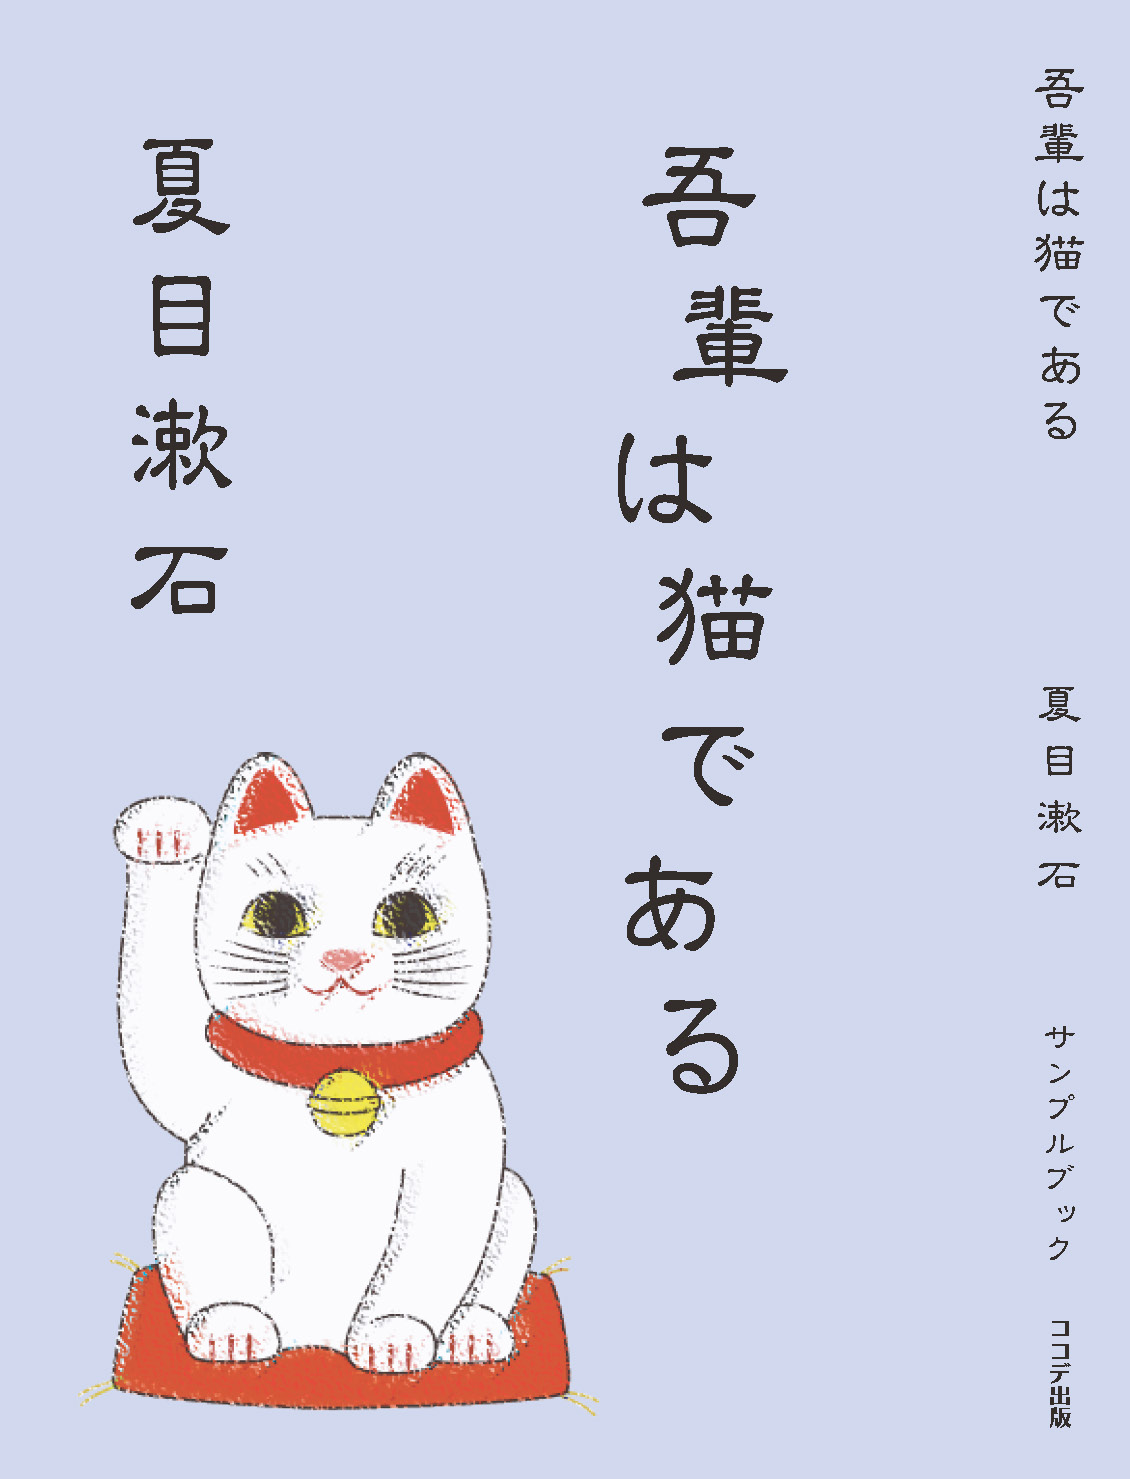 営業ツールとして「吾輩は猫である/夏目漱石」ココデ出版サンプル本を制作いたしました。